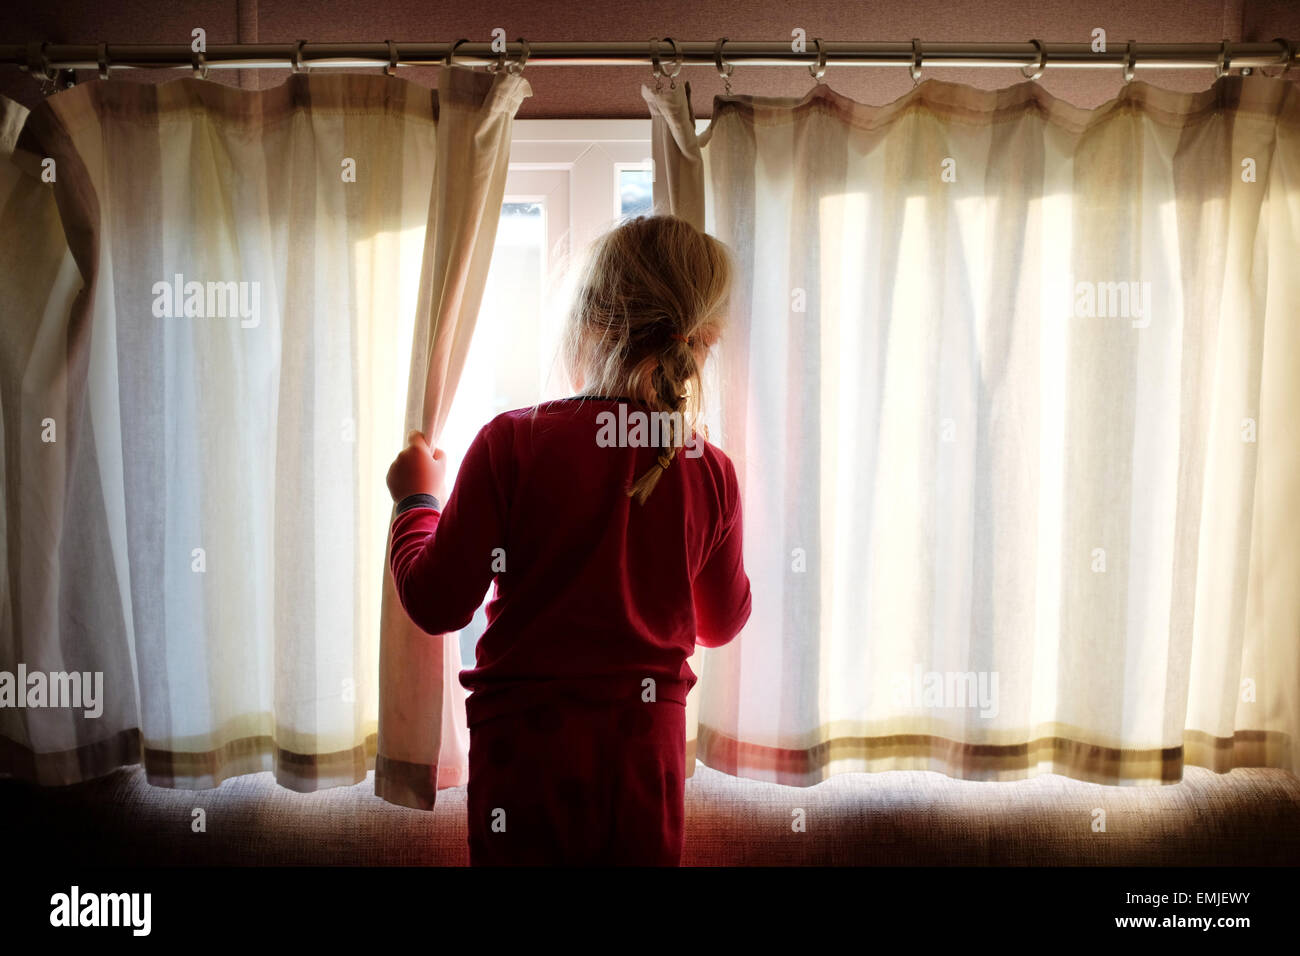 Una sonnolenta giovane ragazza in pigiama apre le tende a guardare fuori dalla finestra all'inizio di un nuovo giorno Foto Stock